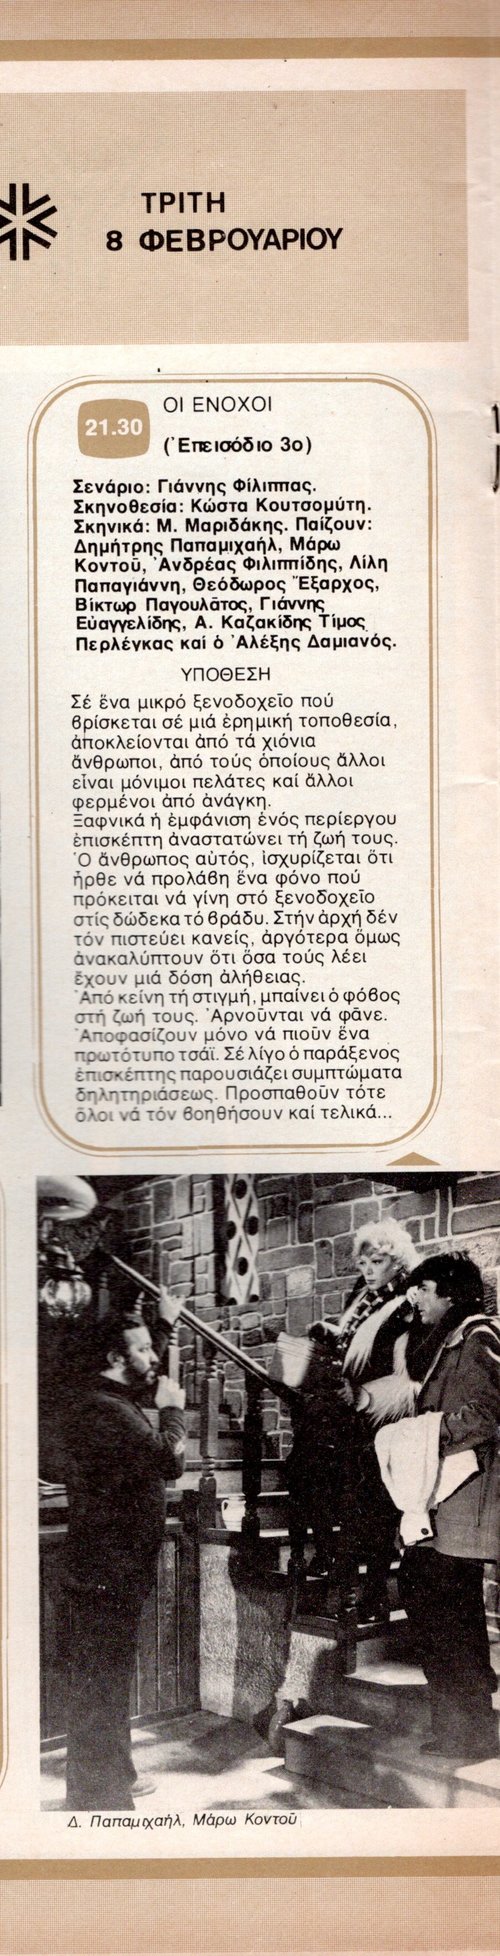 1977 02-08.jpg